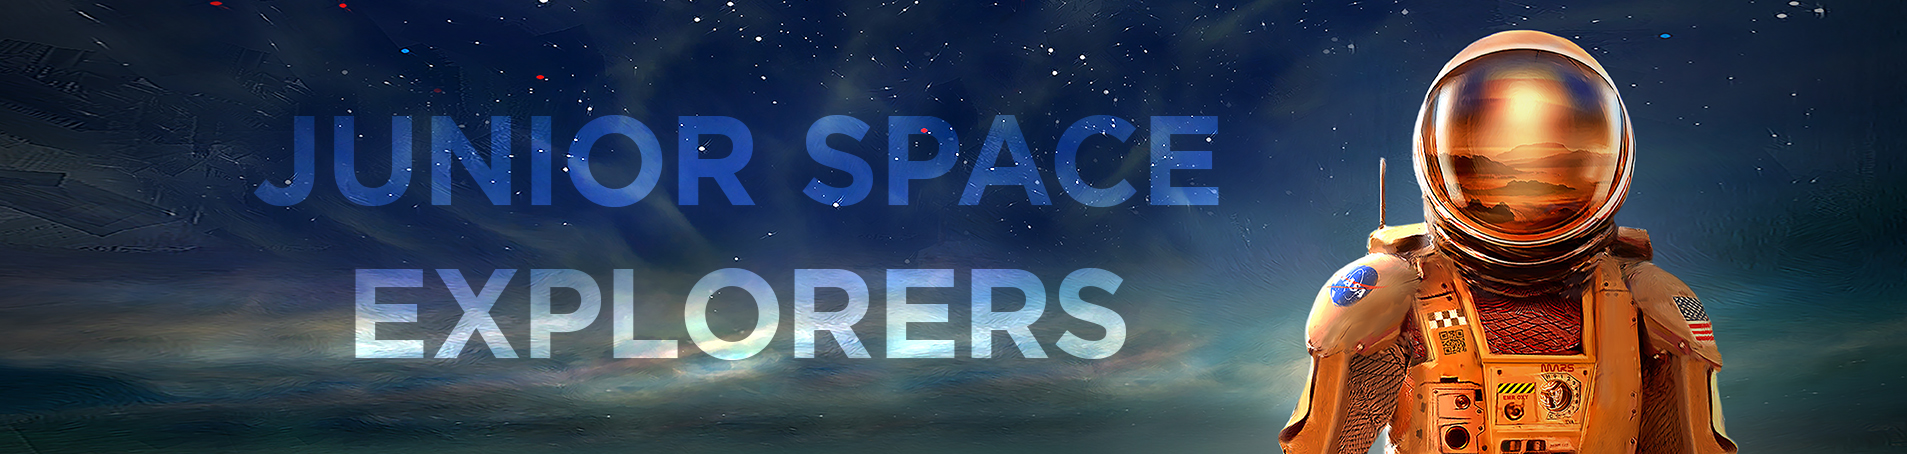 Junior Space Explorers